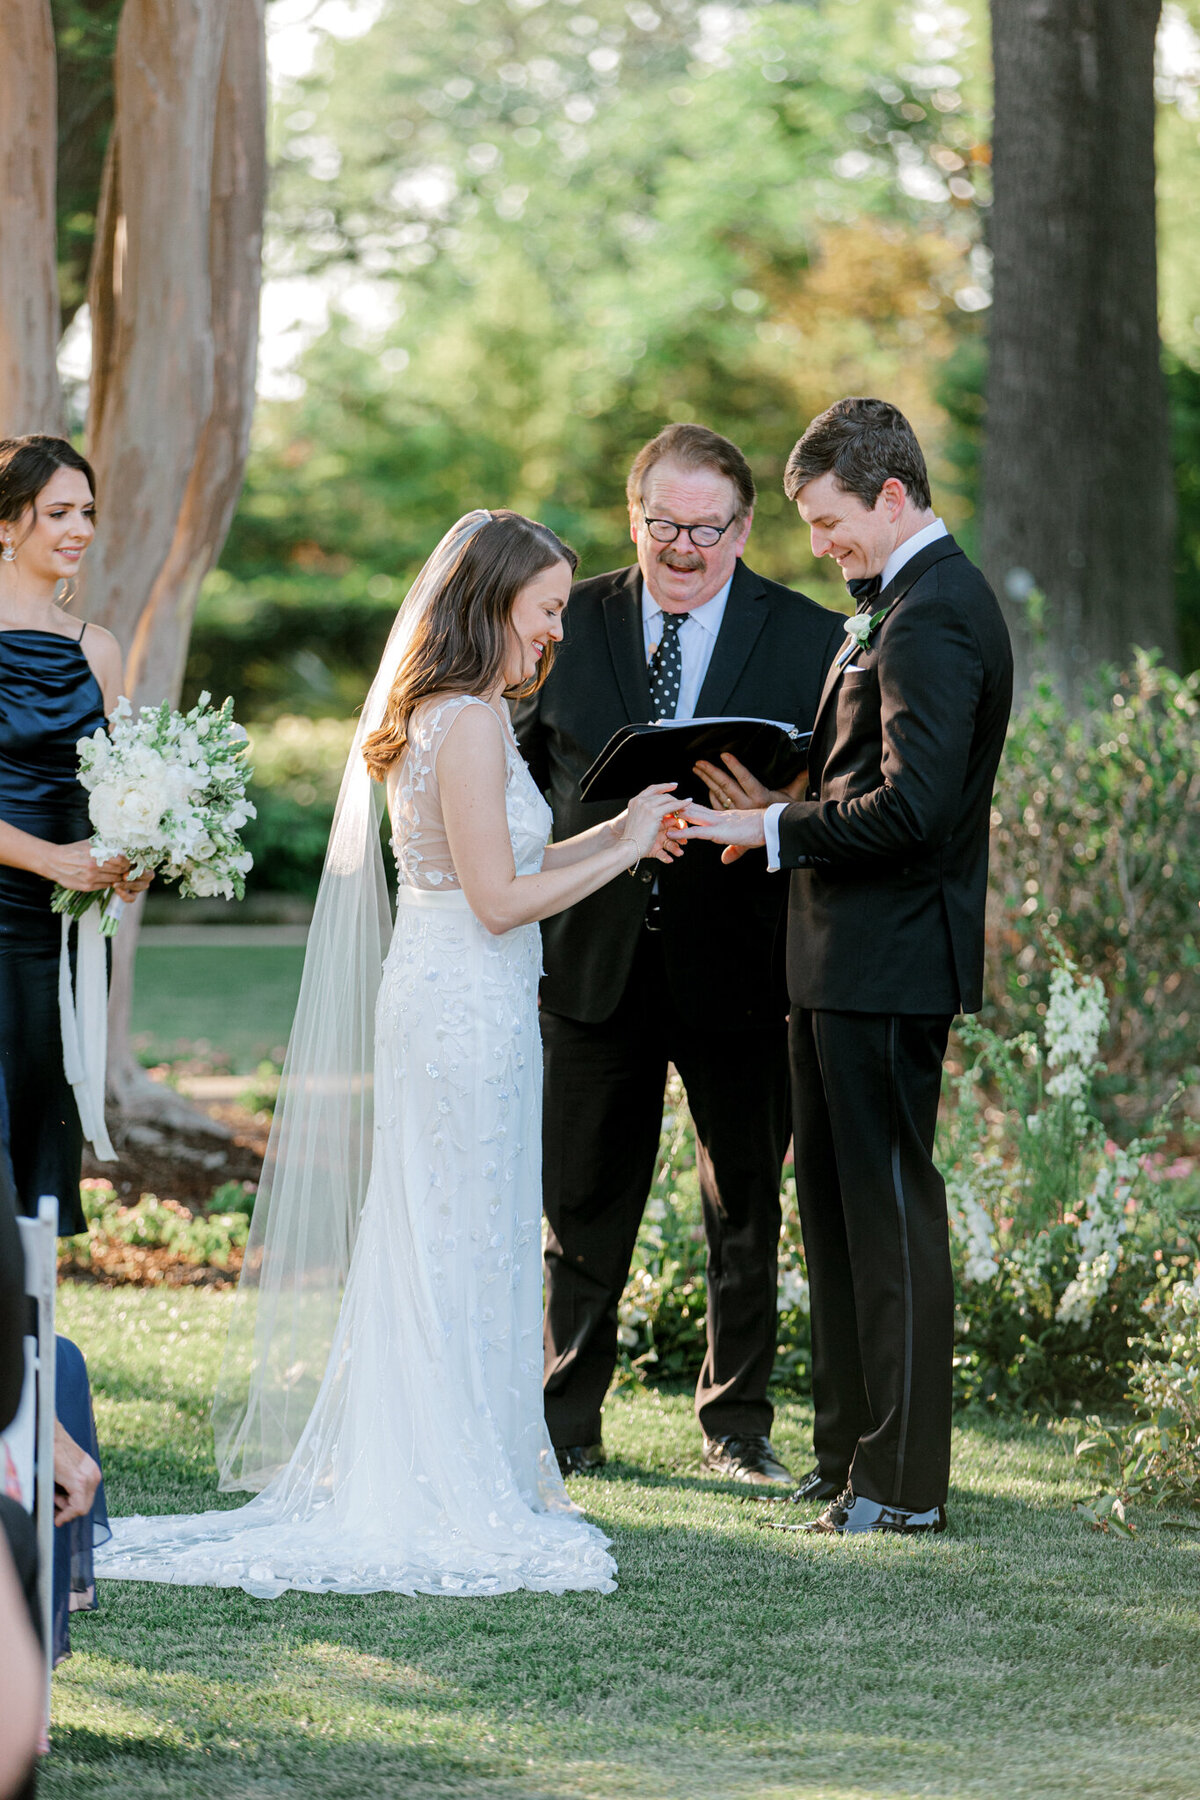 Gena & Matt's Wedding at the Dallas Arboretum | Dallas Wedding Photographer | Sami Kathryn Photography-152